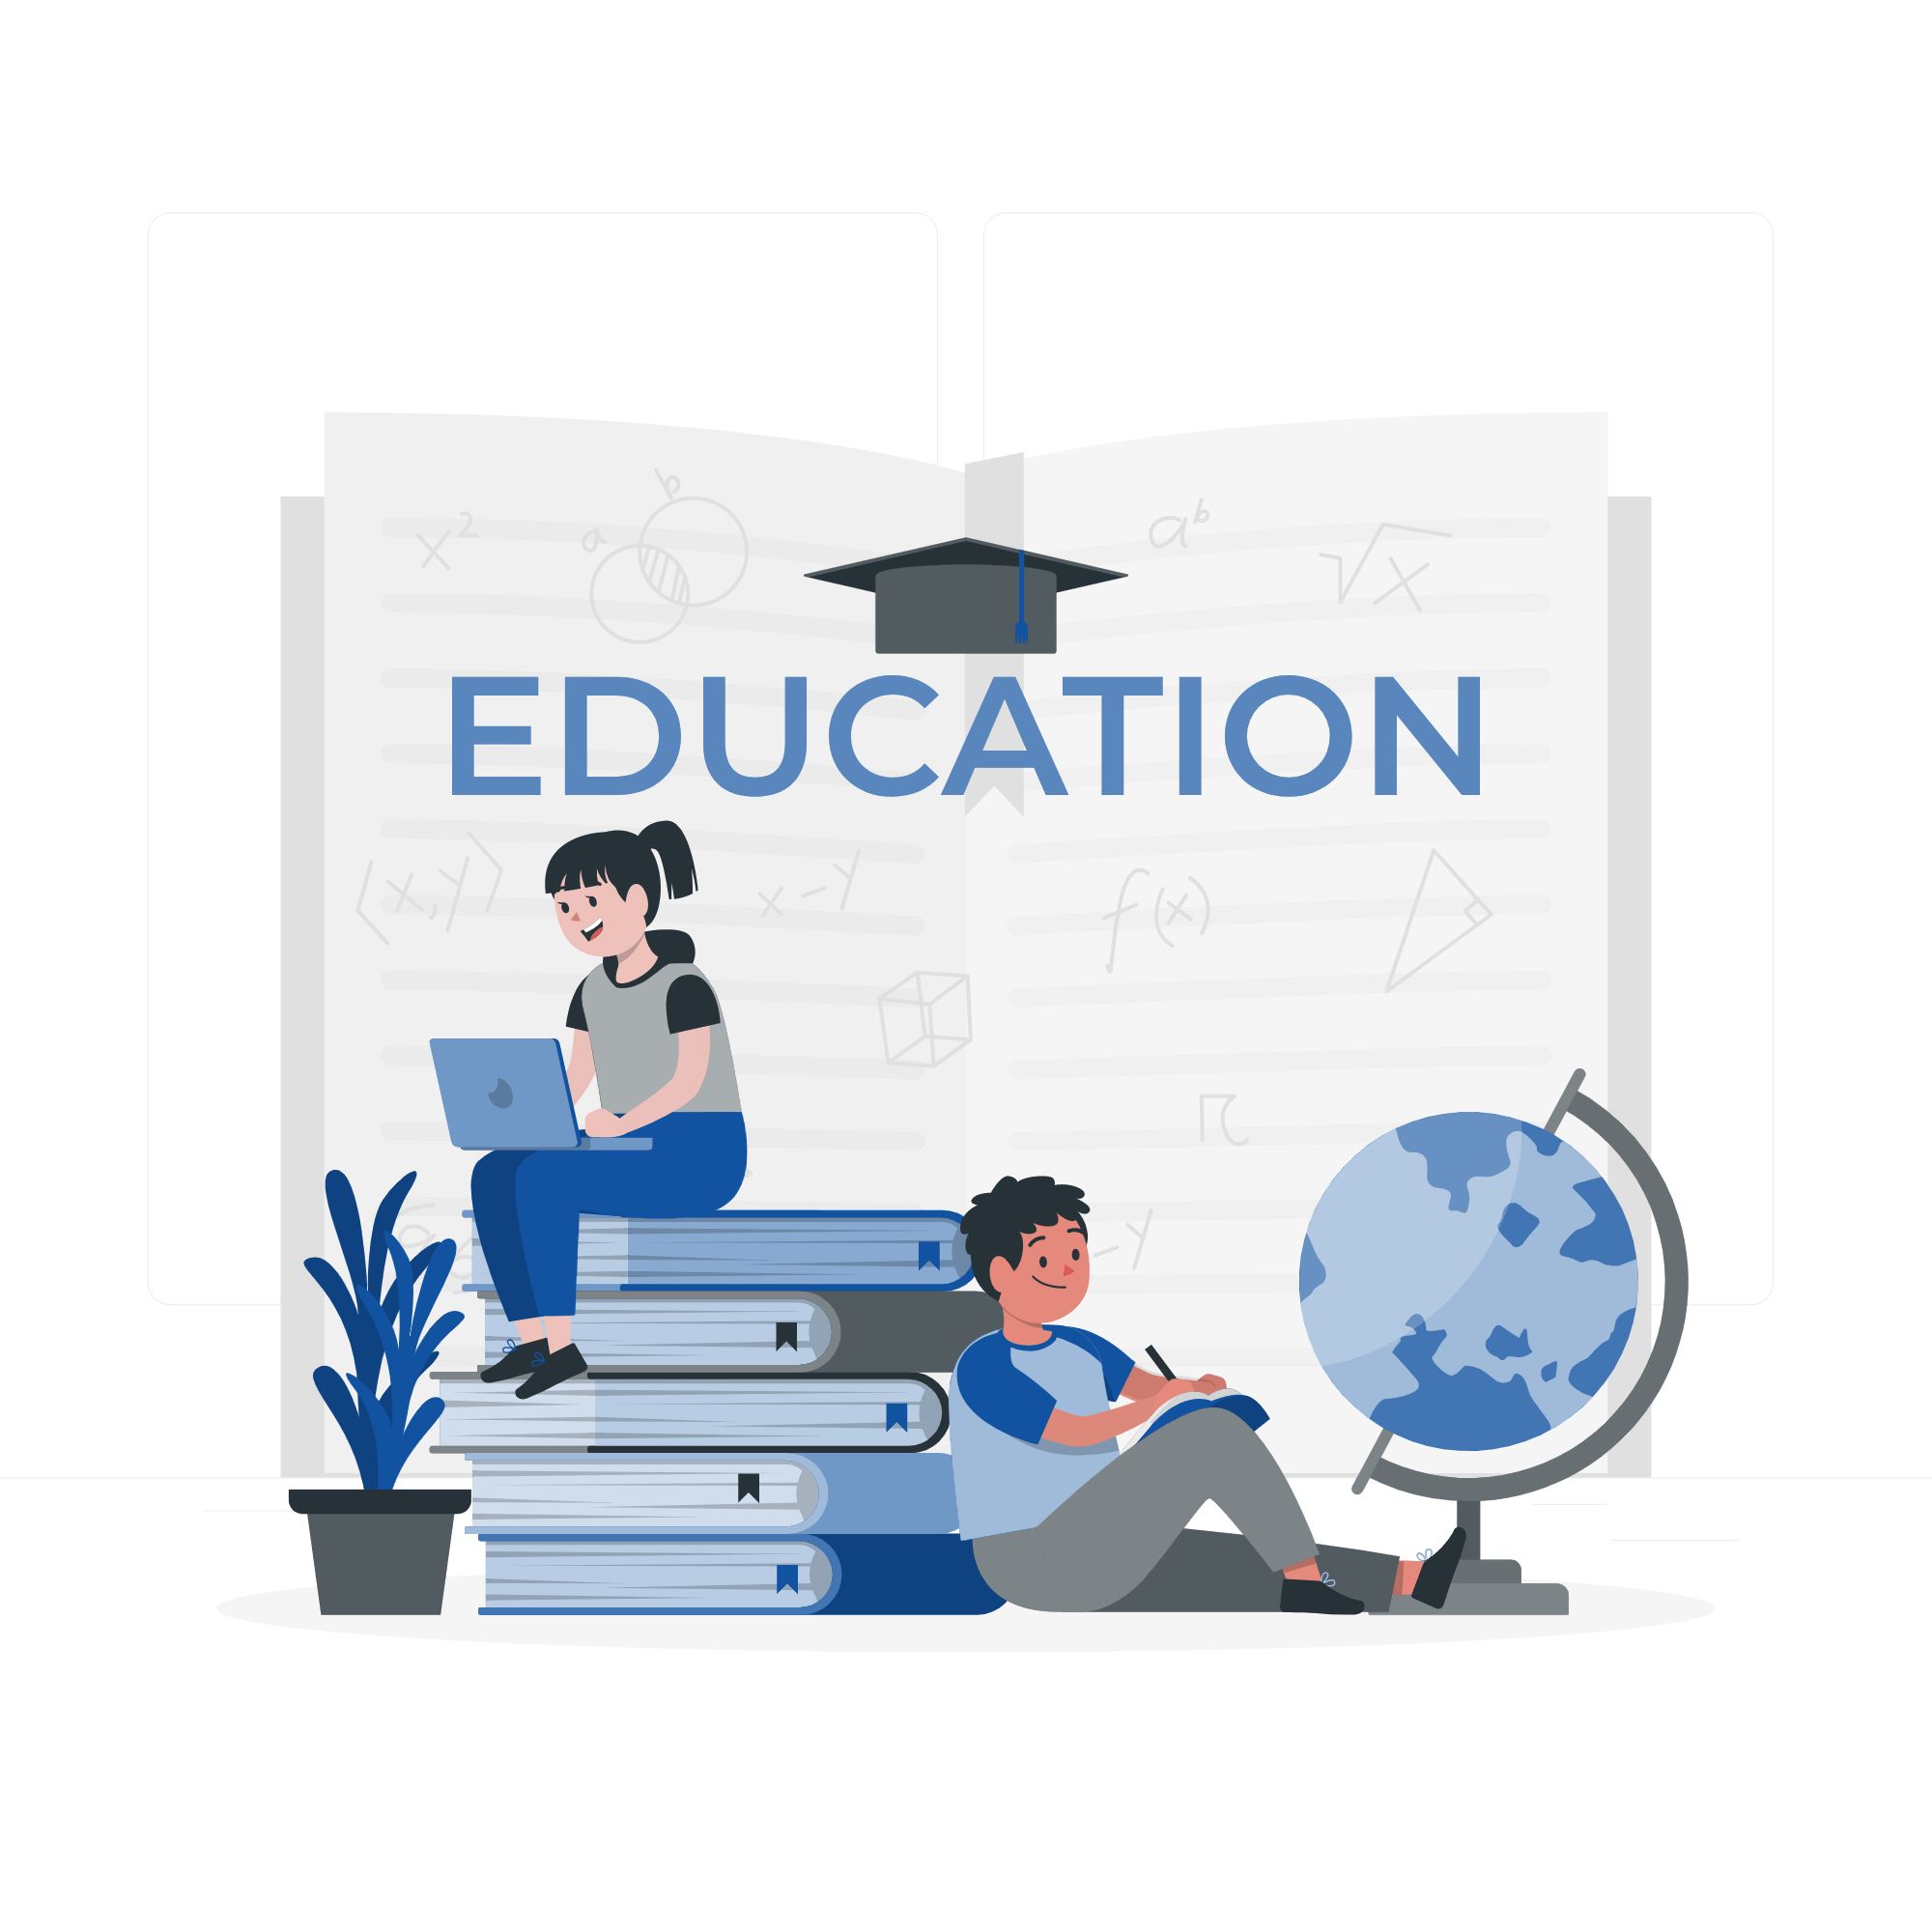 Education-rafiki-min.png